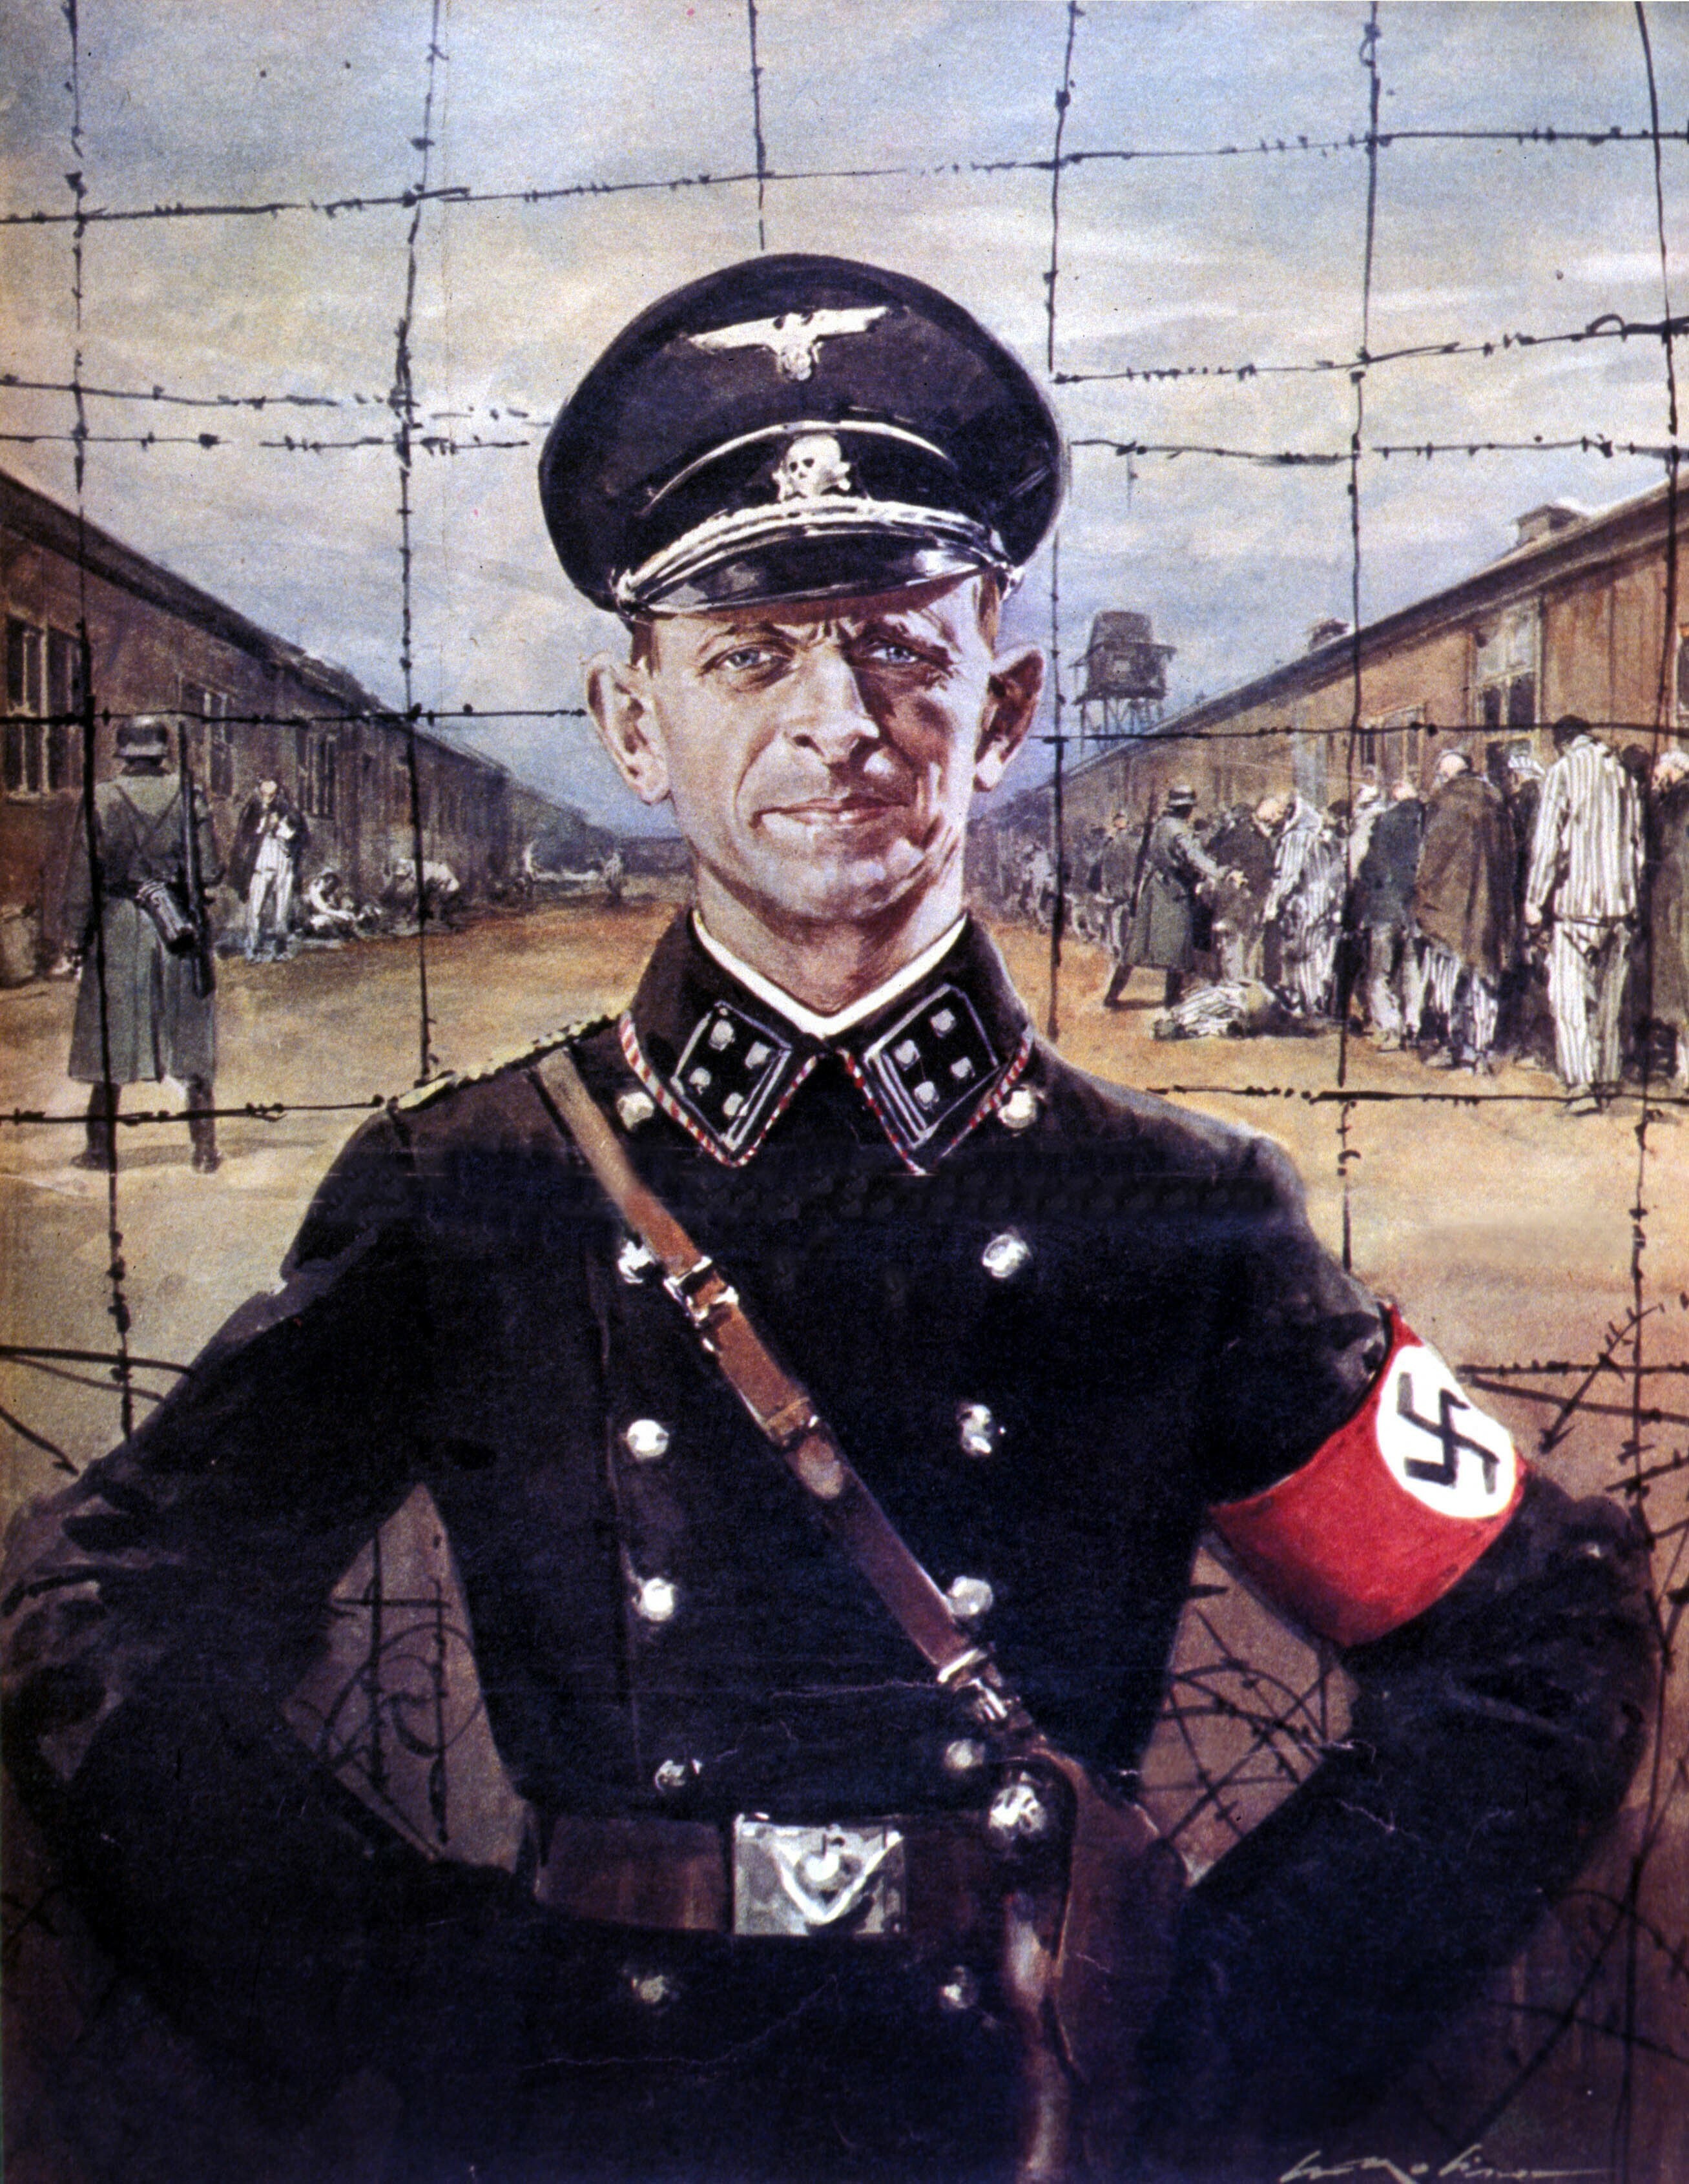 Portret Adolfa Eichmanna autorstwa włoskiego rysownika Waltera Molino.